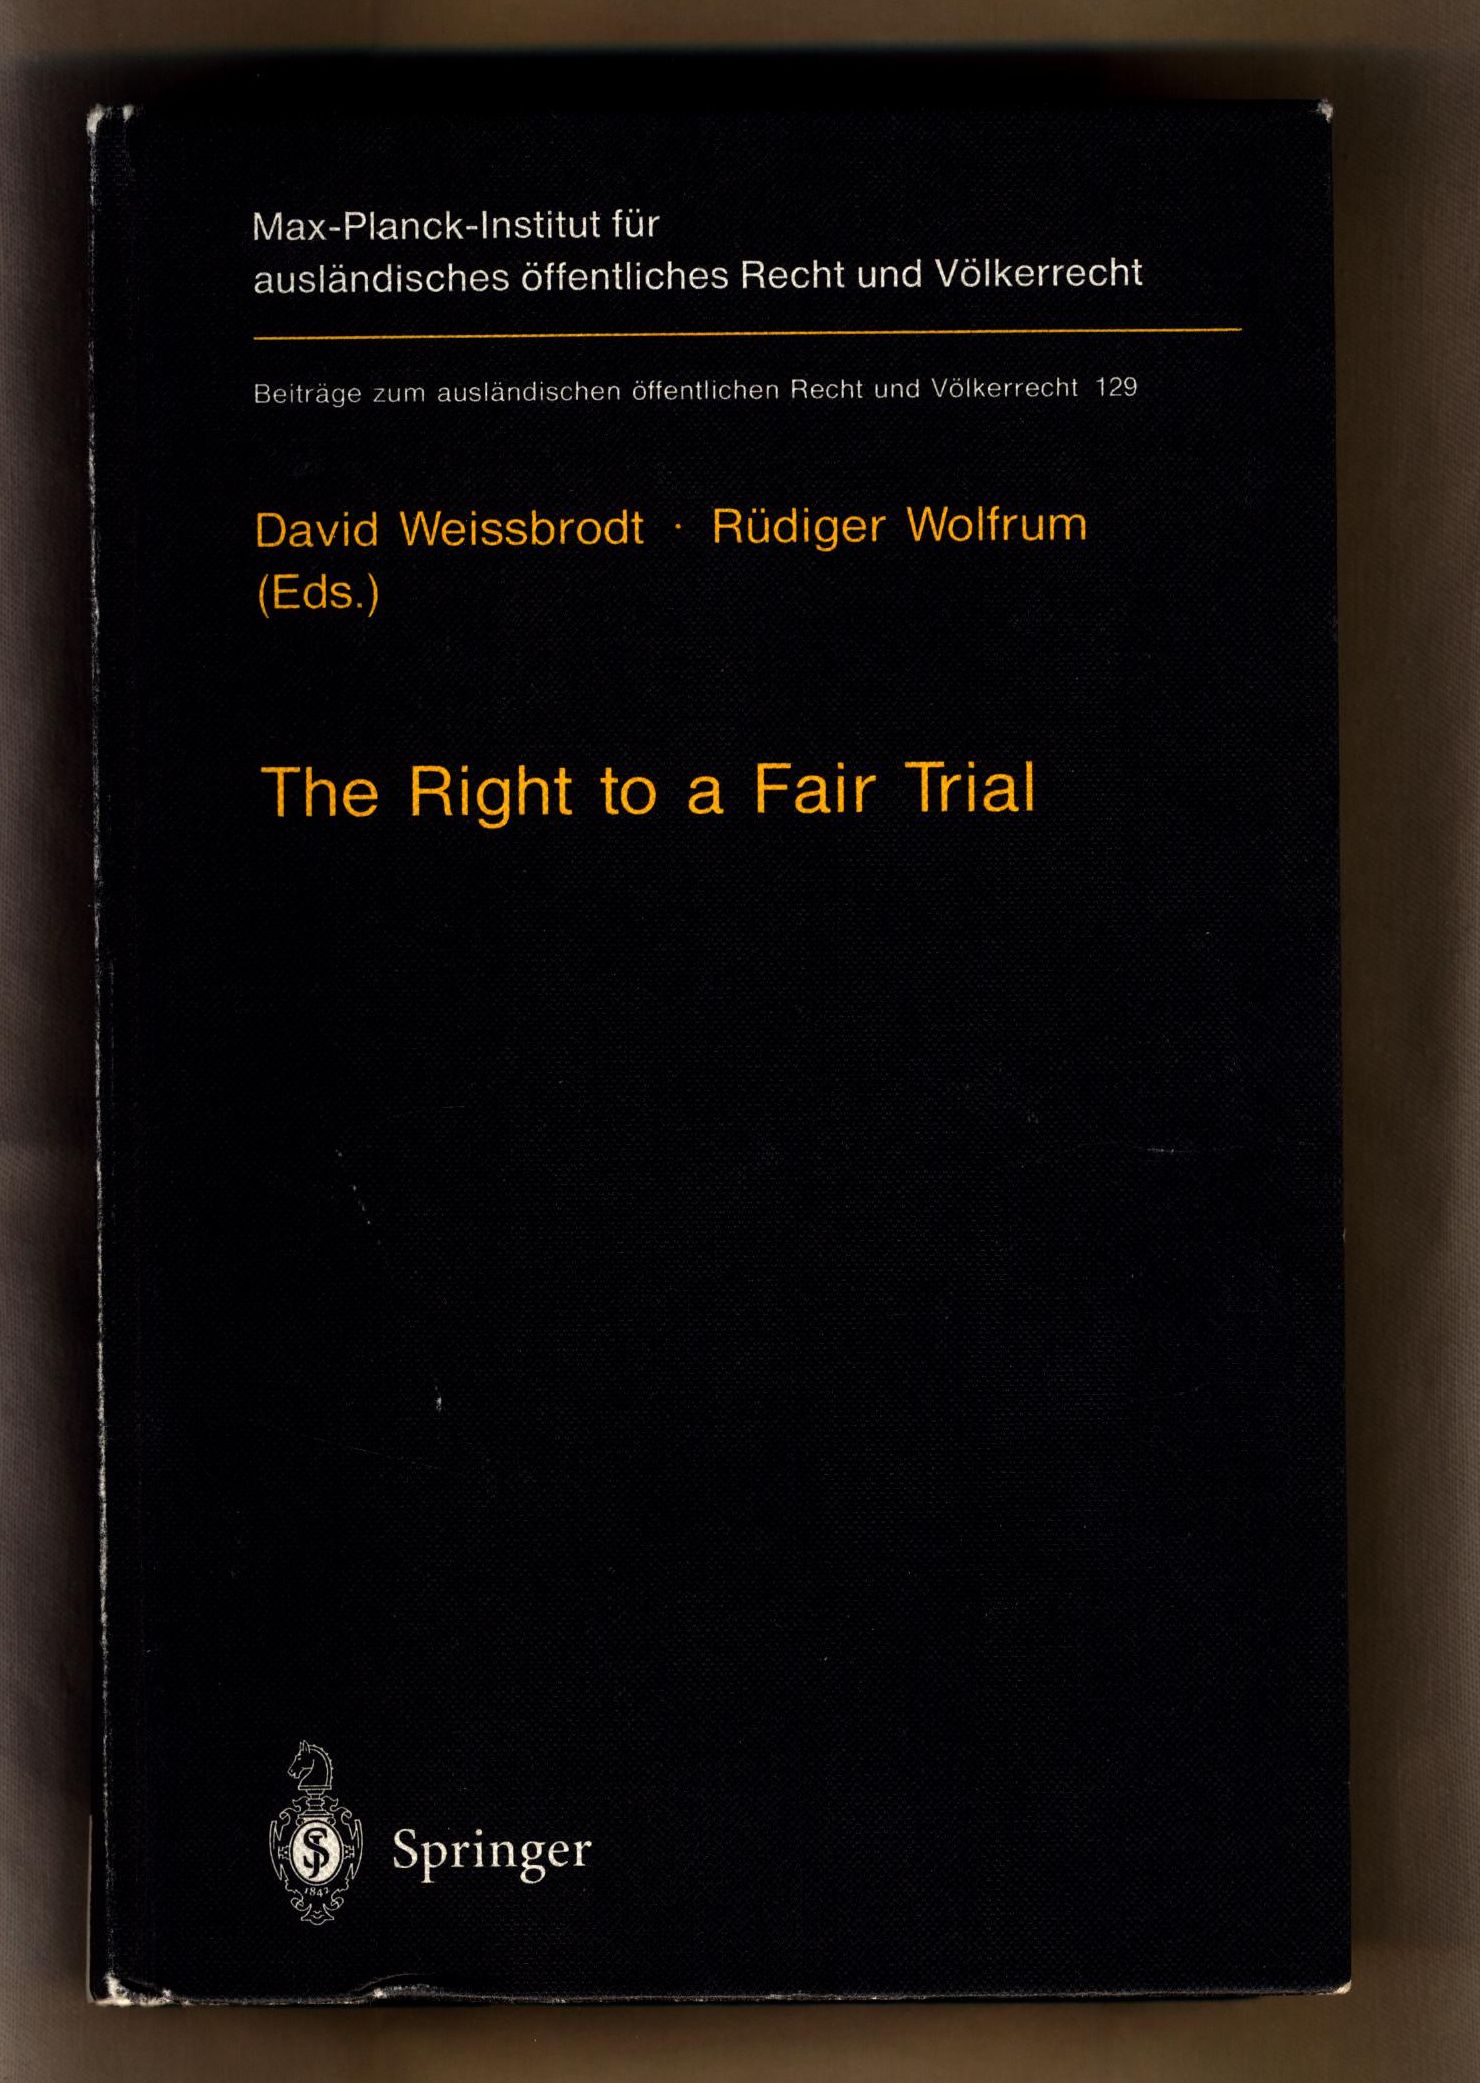 The Right to a Fair Trial  Beiträge zum ausländischen öffentlichen Recht und Völkerrecht ; Band 129 - Weissbrodt, David und Rüdiger Wolfrum